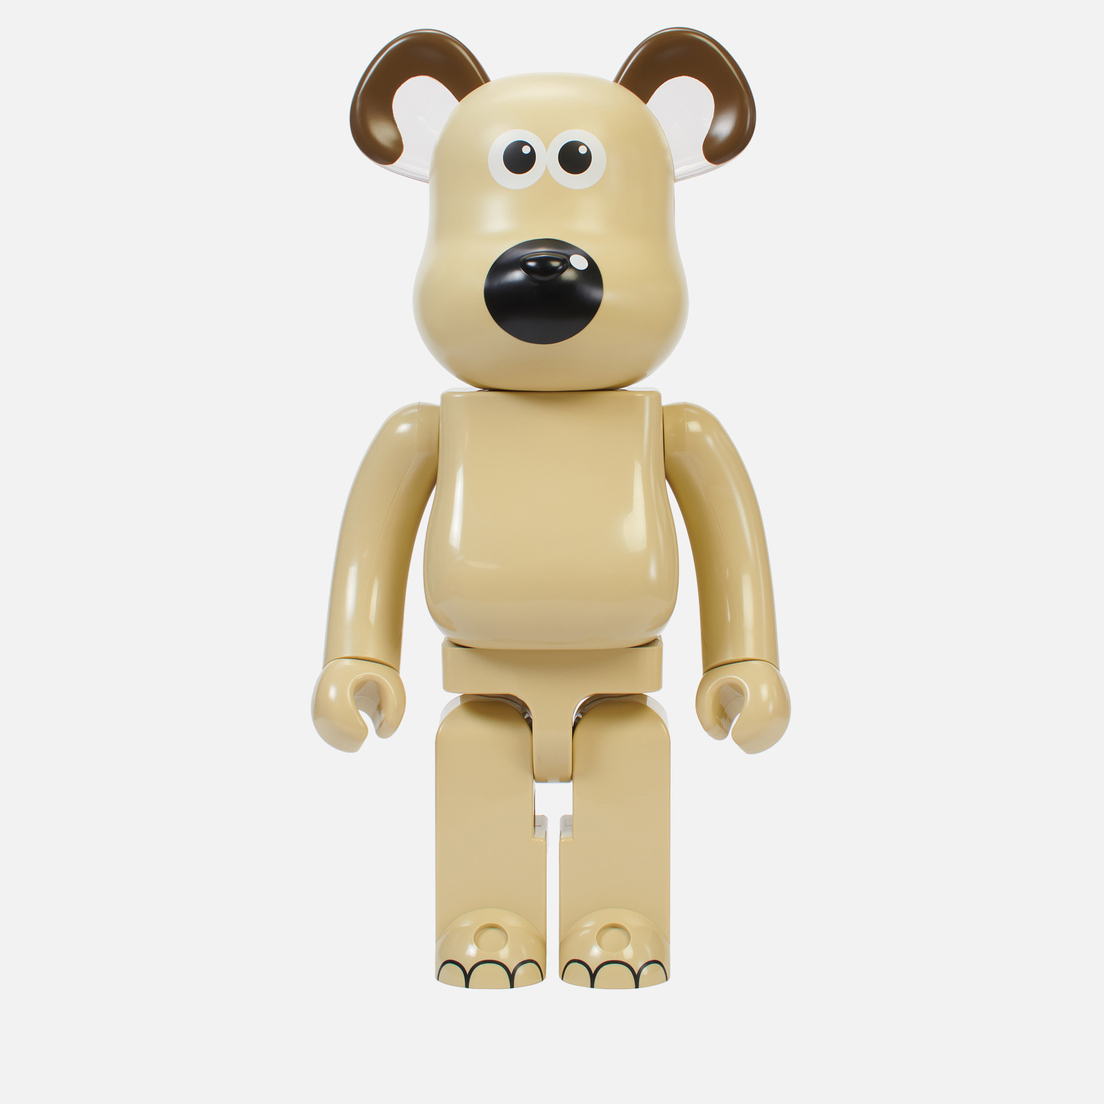 Medicom Toy Игрушка Gromit 1000%